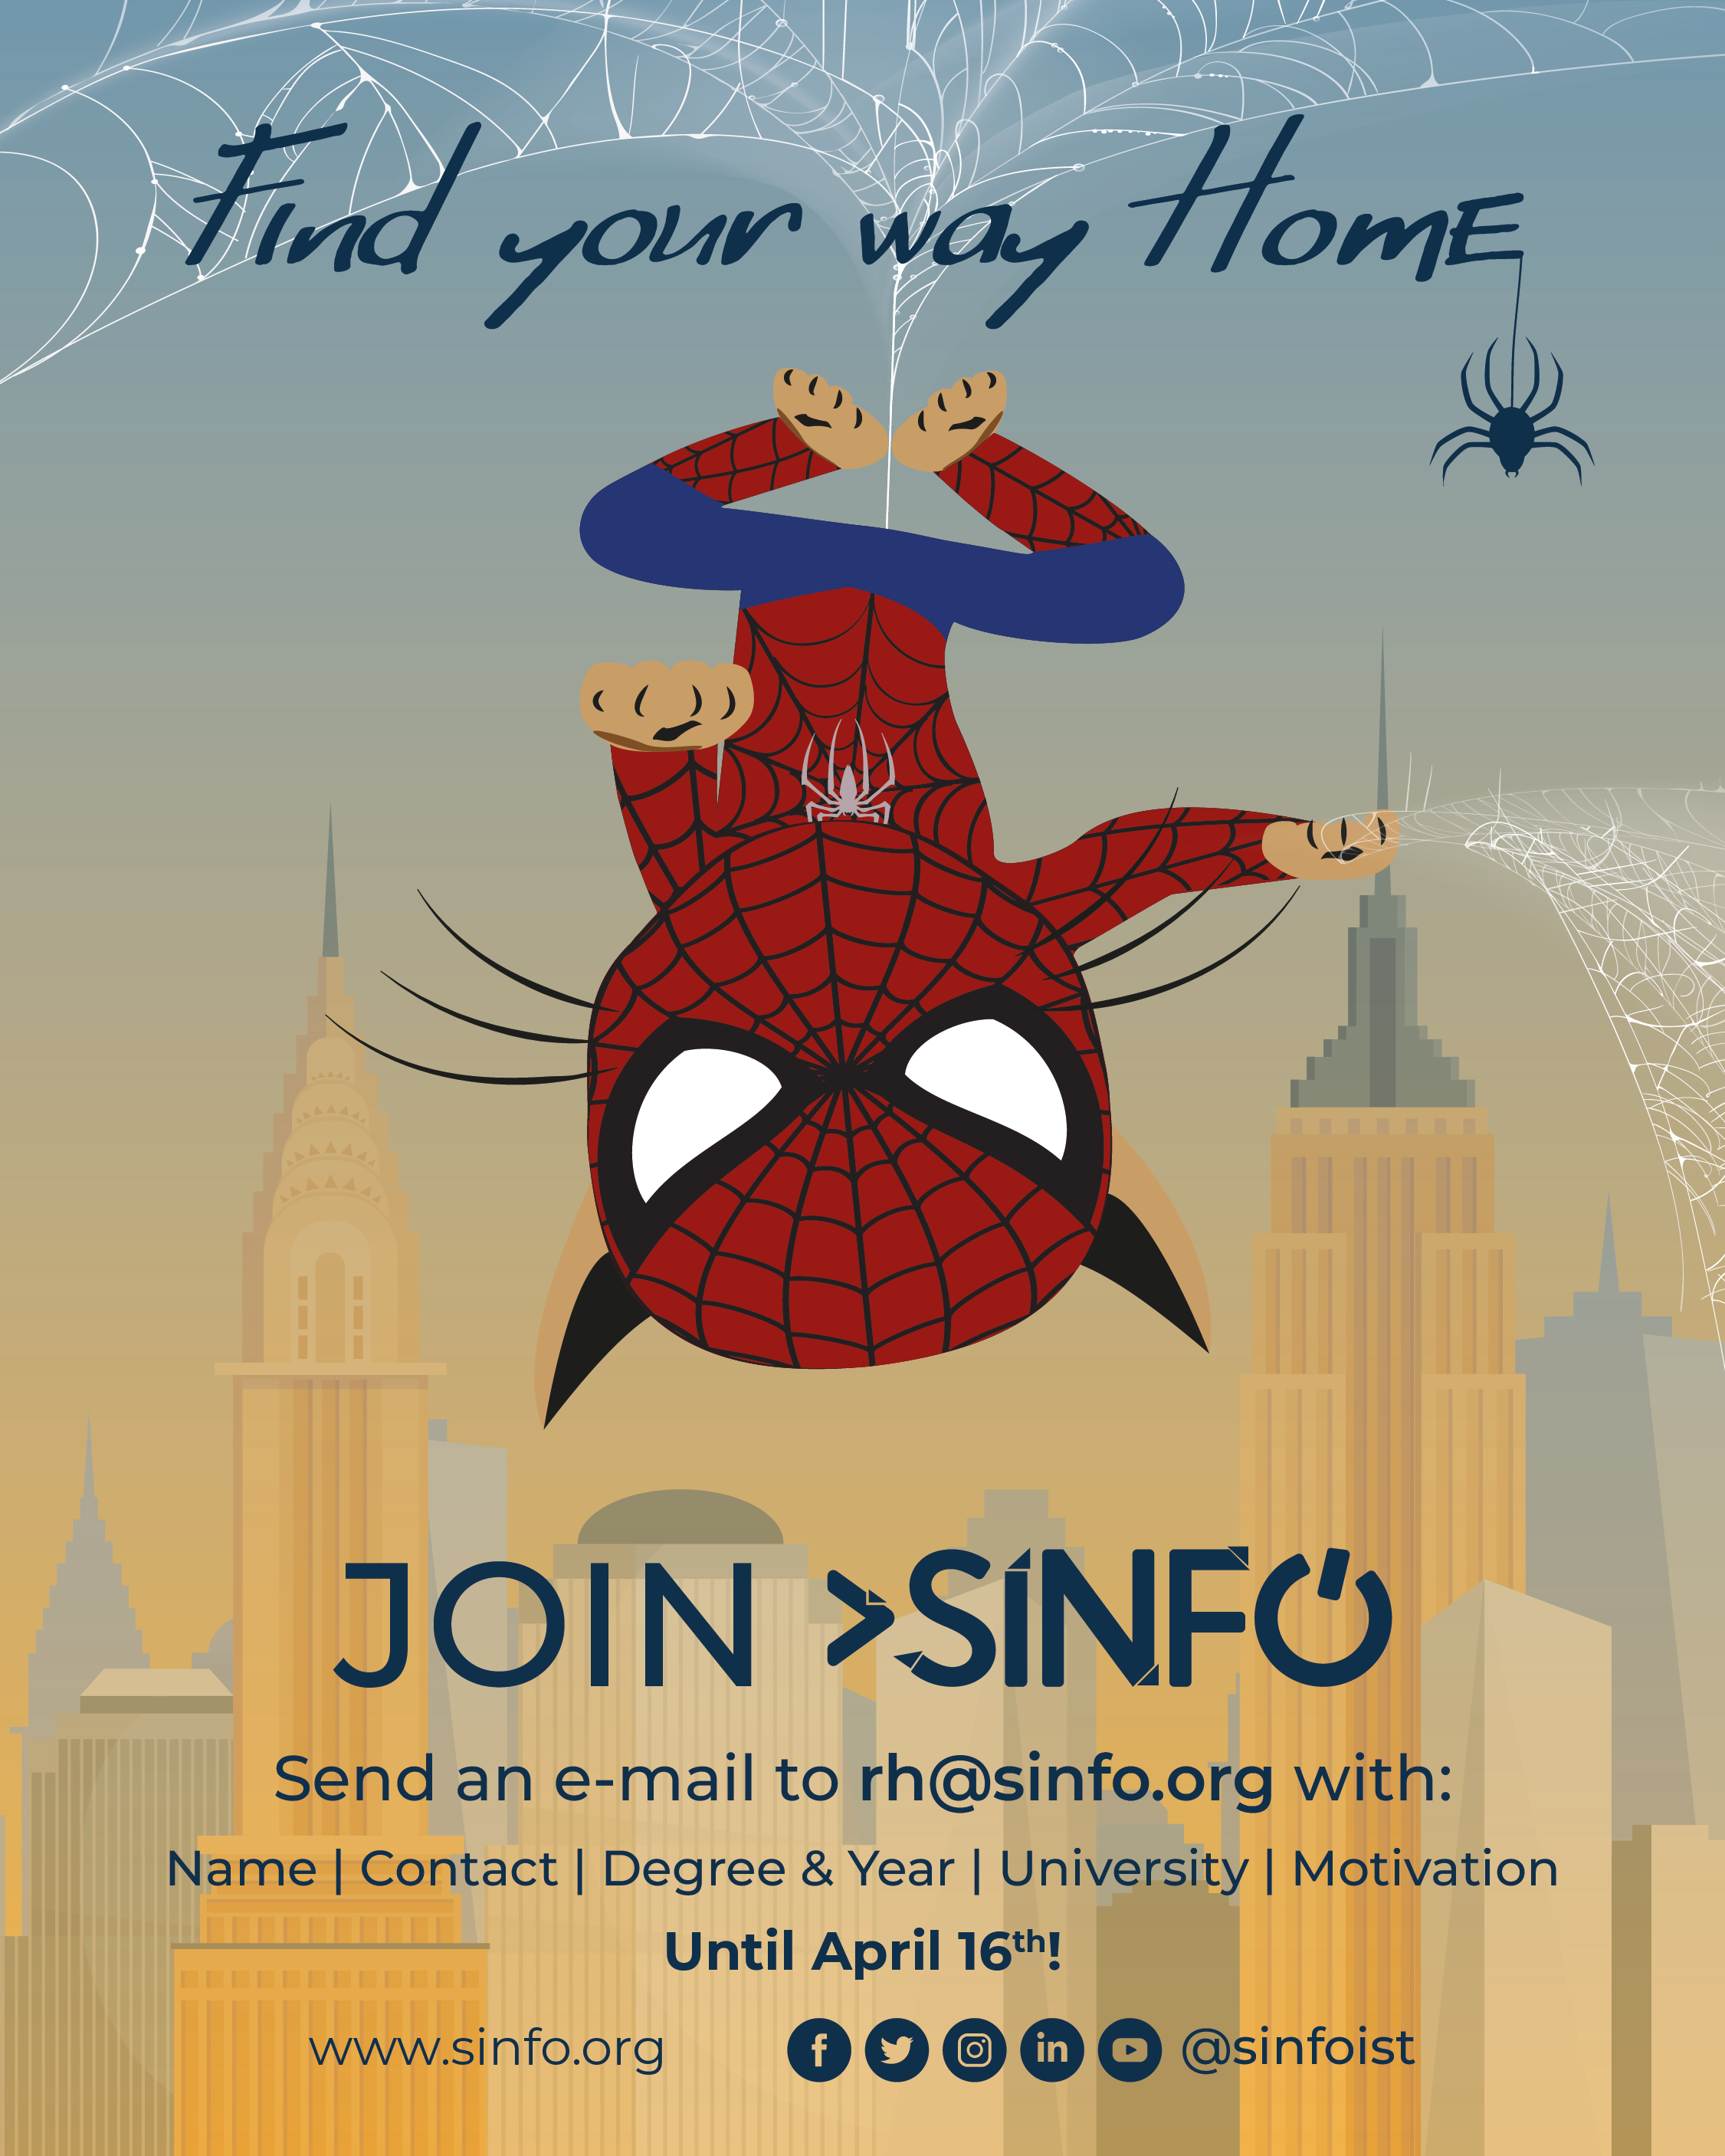 SINFO Recruitment Poster